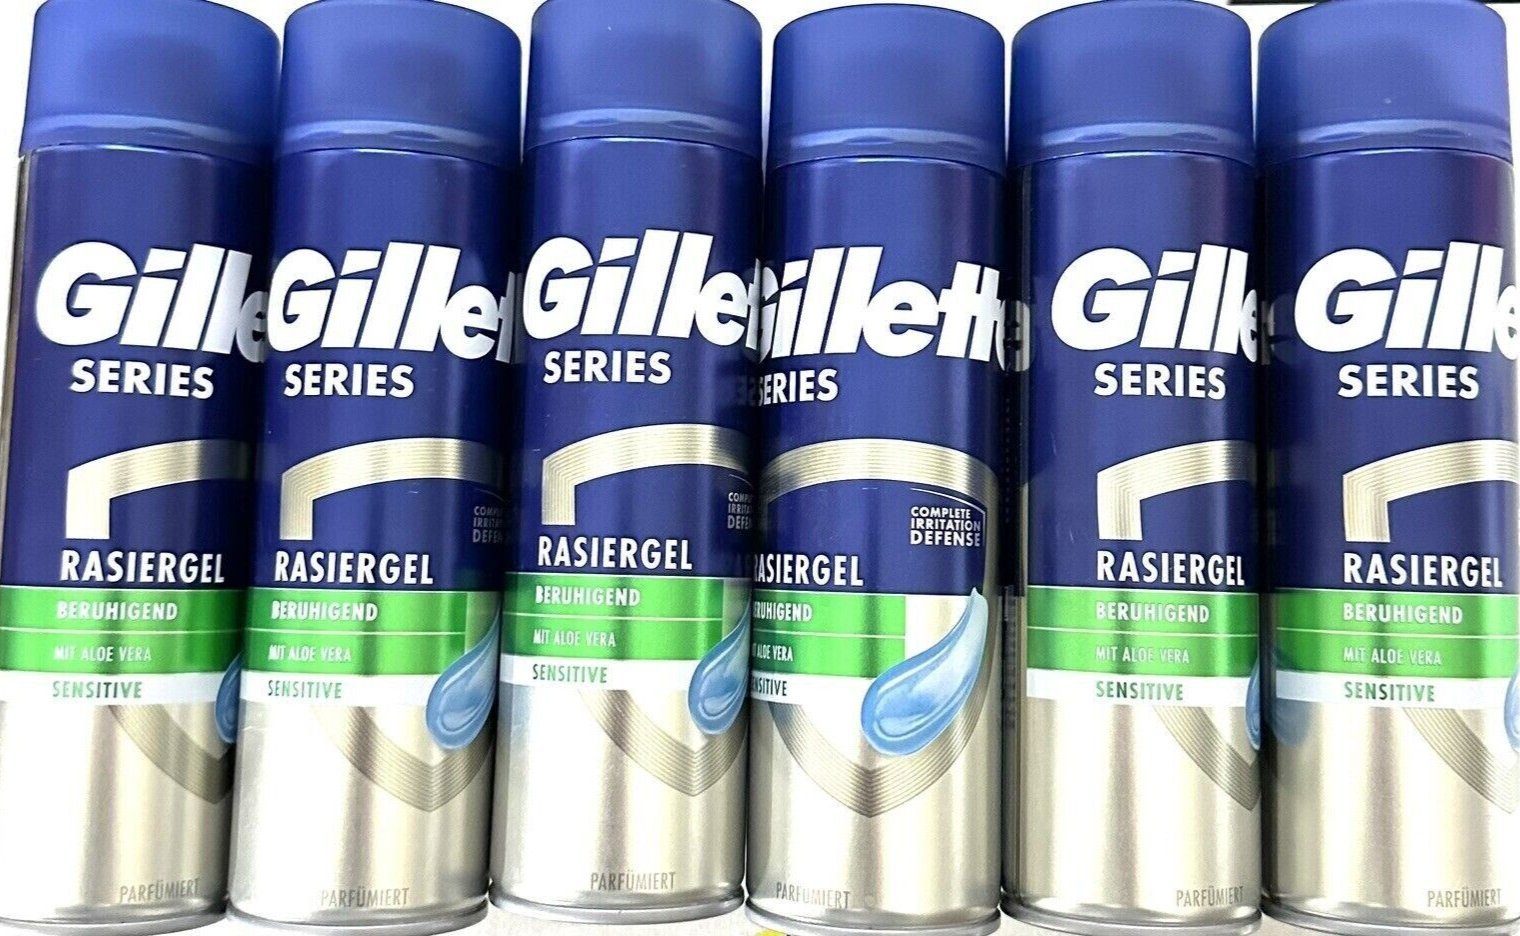 Gillette Rasiergel mit Series Gillette Beruhigend Rasiergel Aloe 6x Vera, 6-tlg.